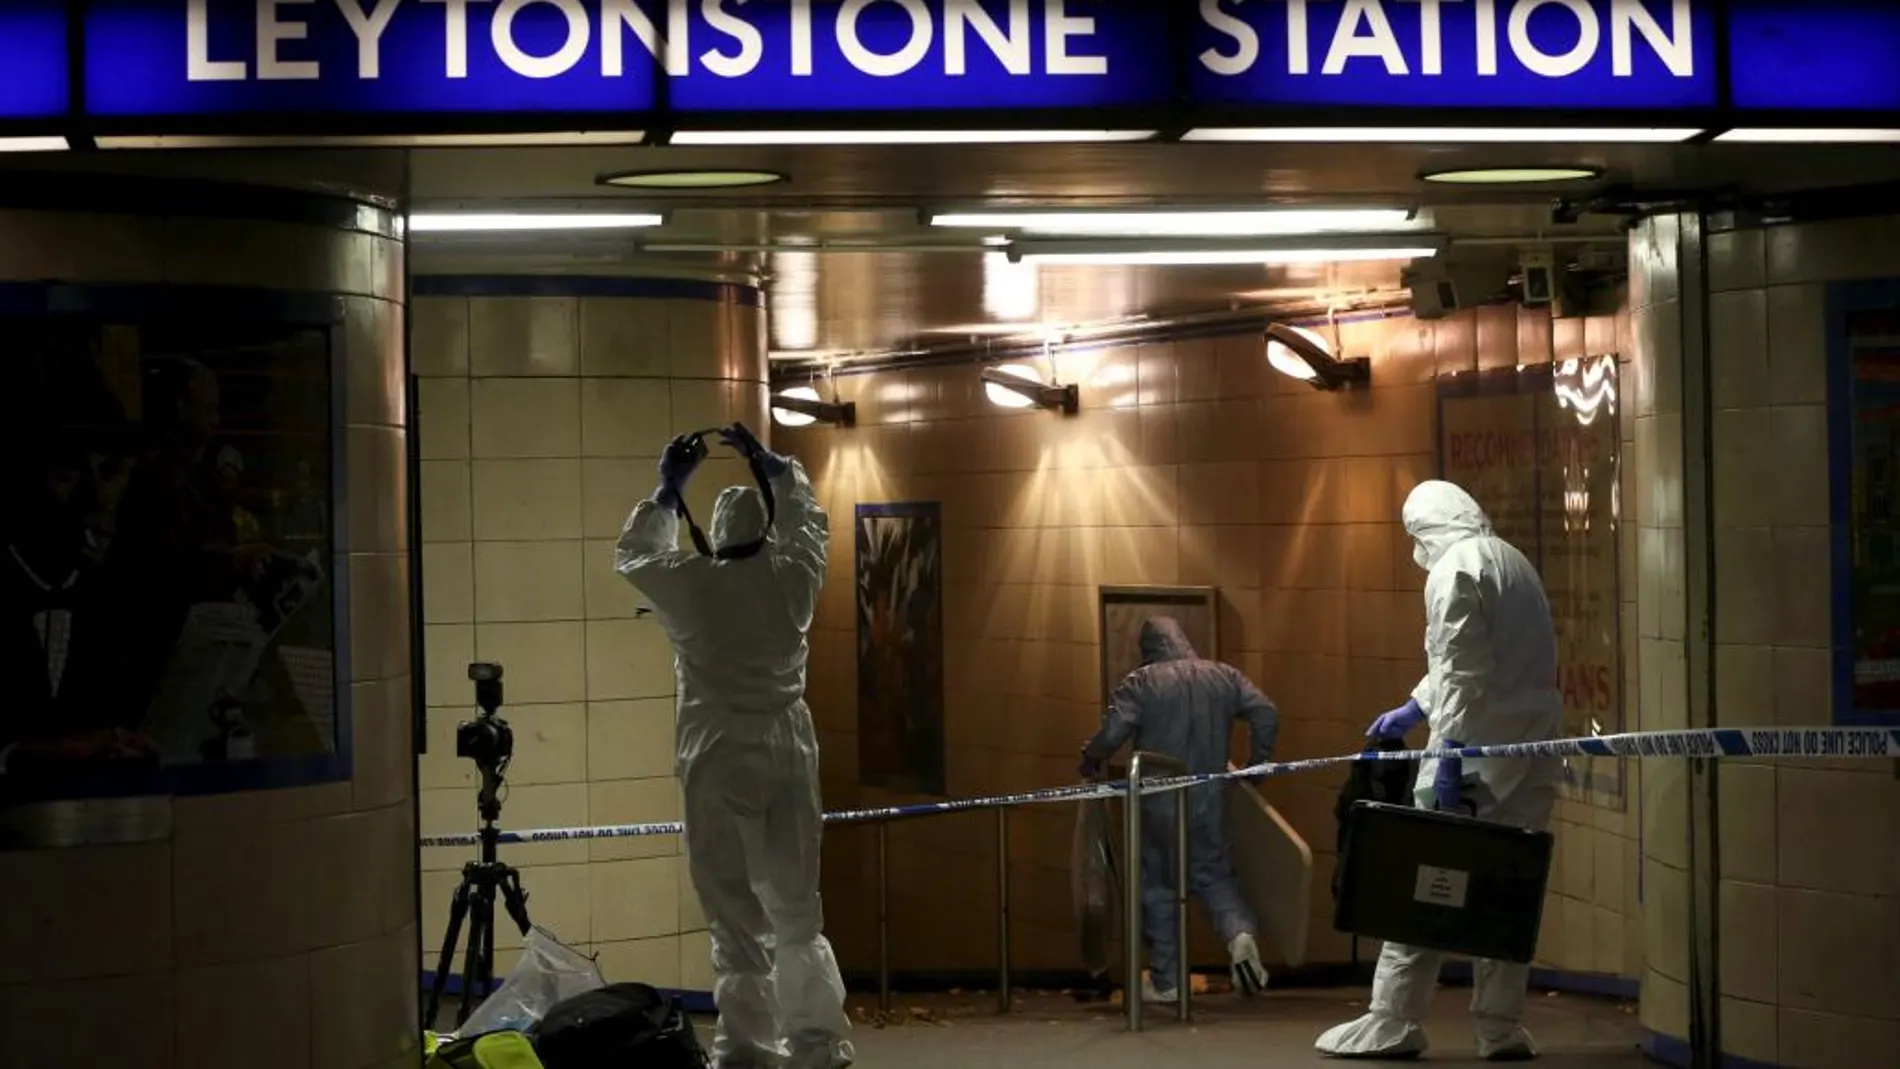 Oficiales de policía investigan en la entrada de la estación de metro leytonstone